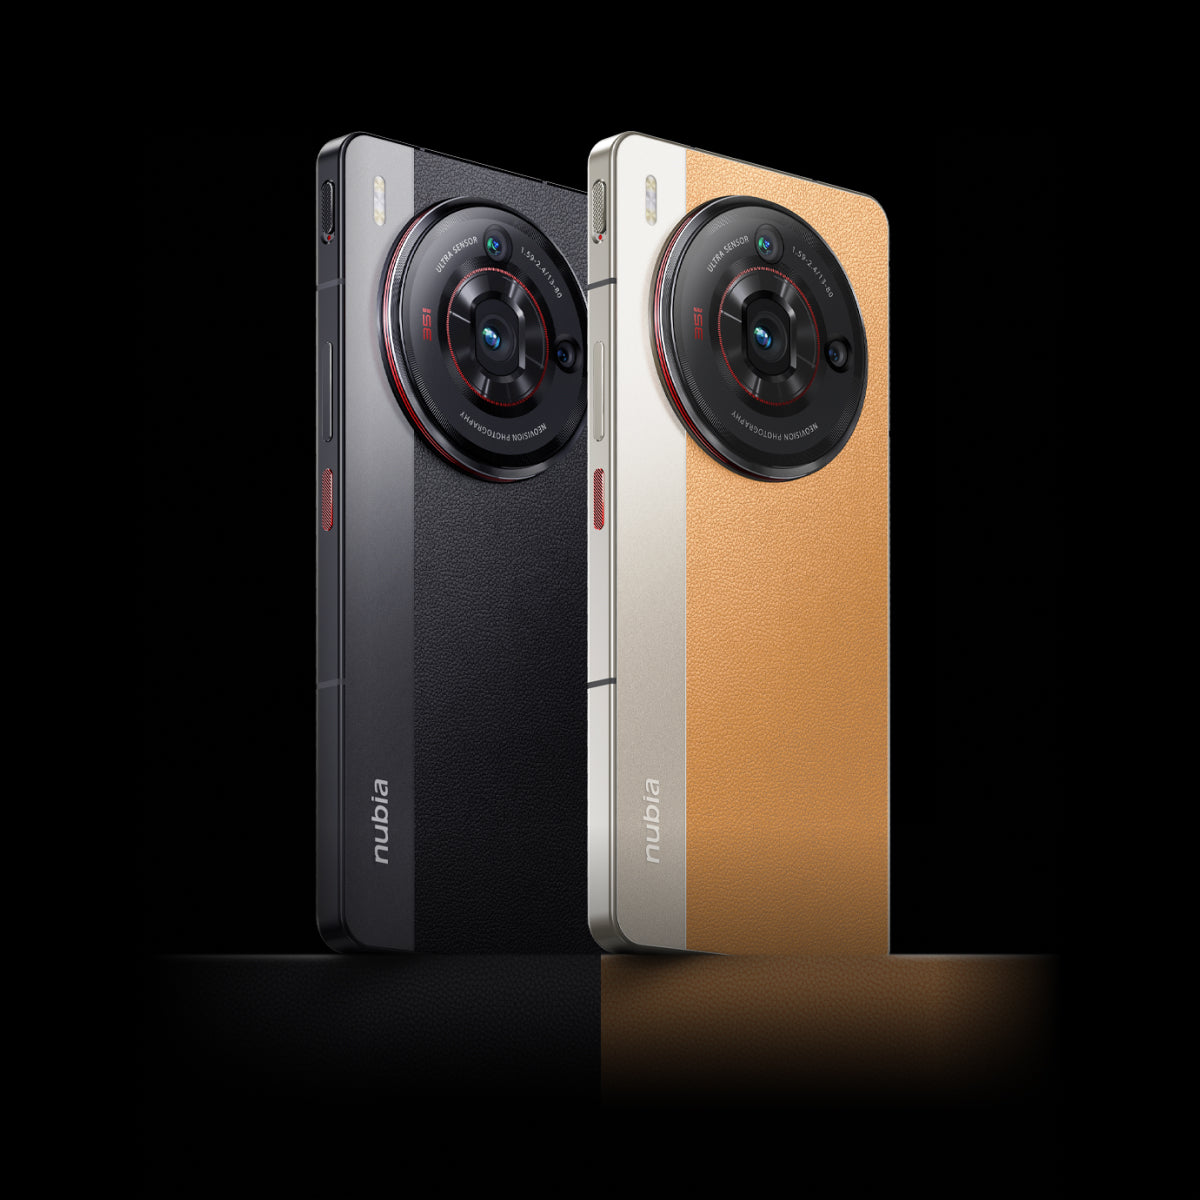 Nubia Z50S Pro se promociona para ir más allá de la fotografía móvil de 1  pulgada en el lanzamiento -  News